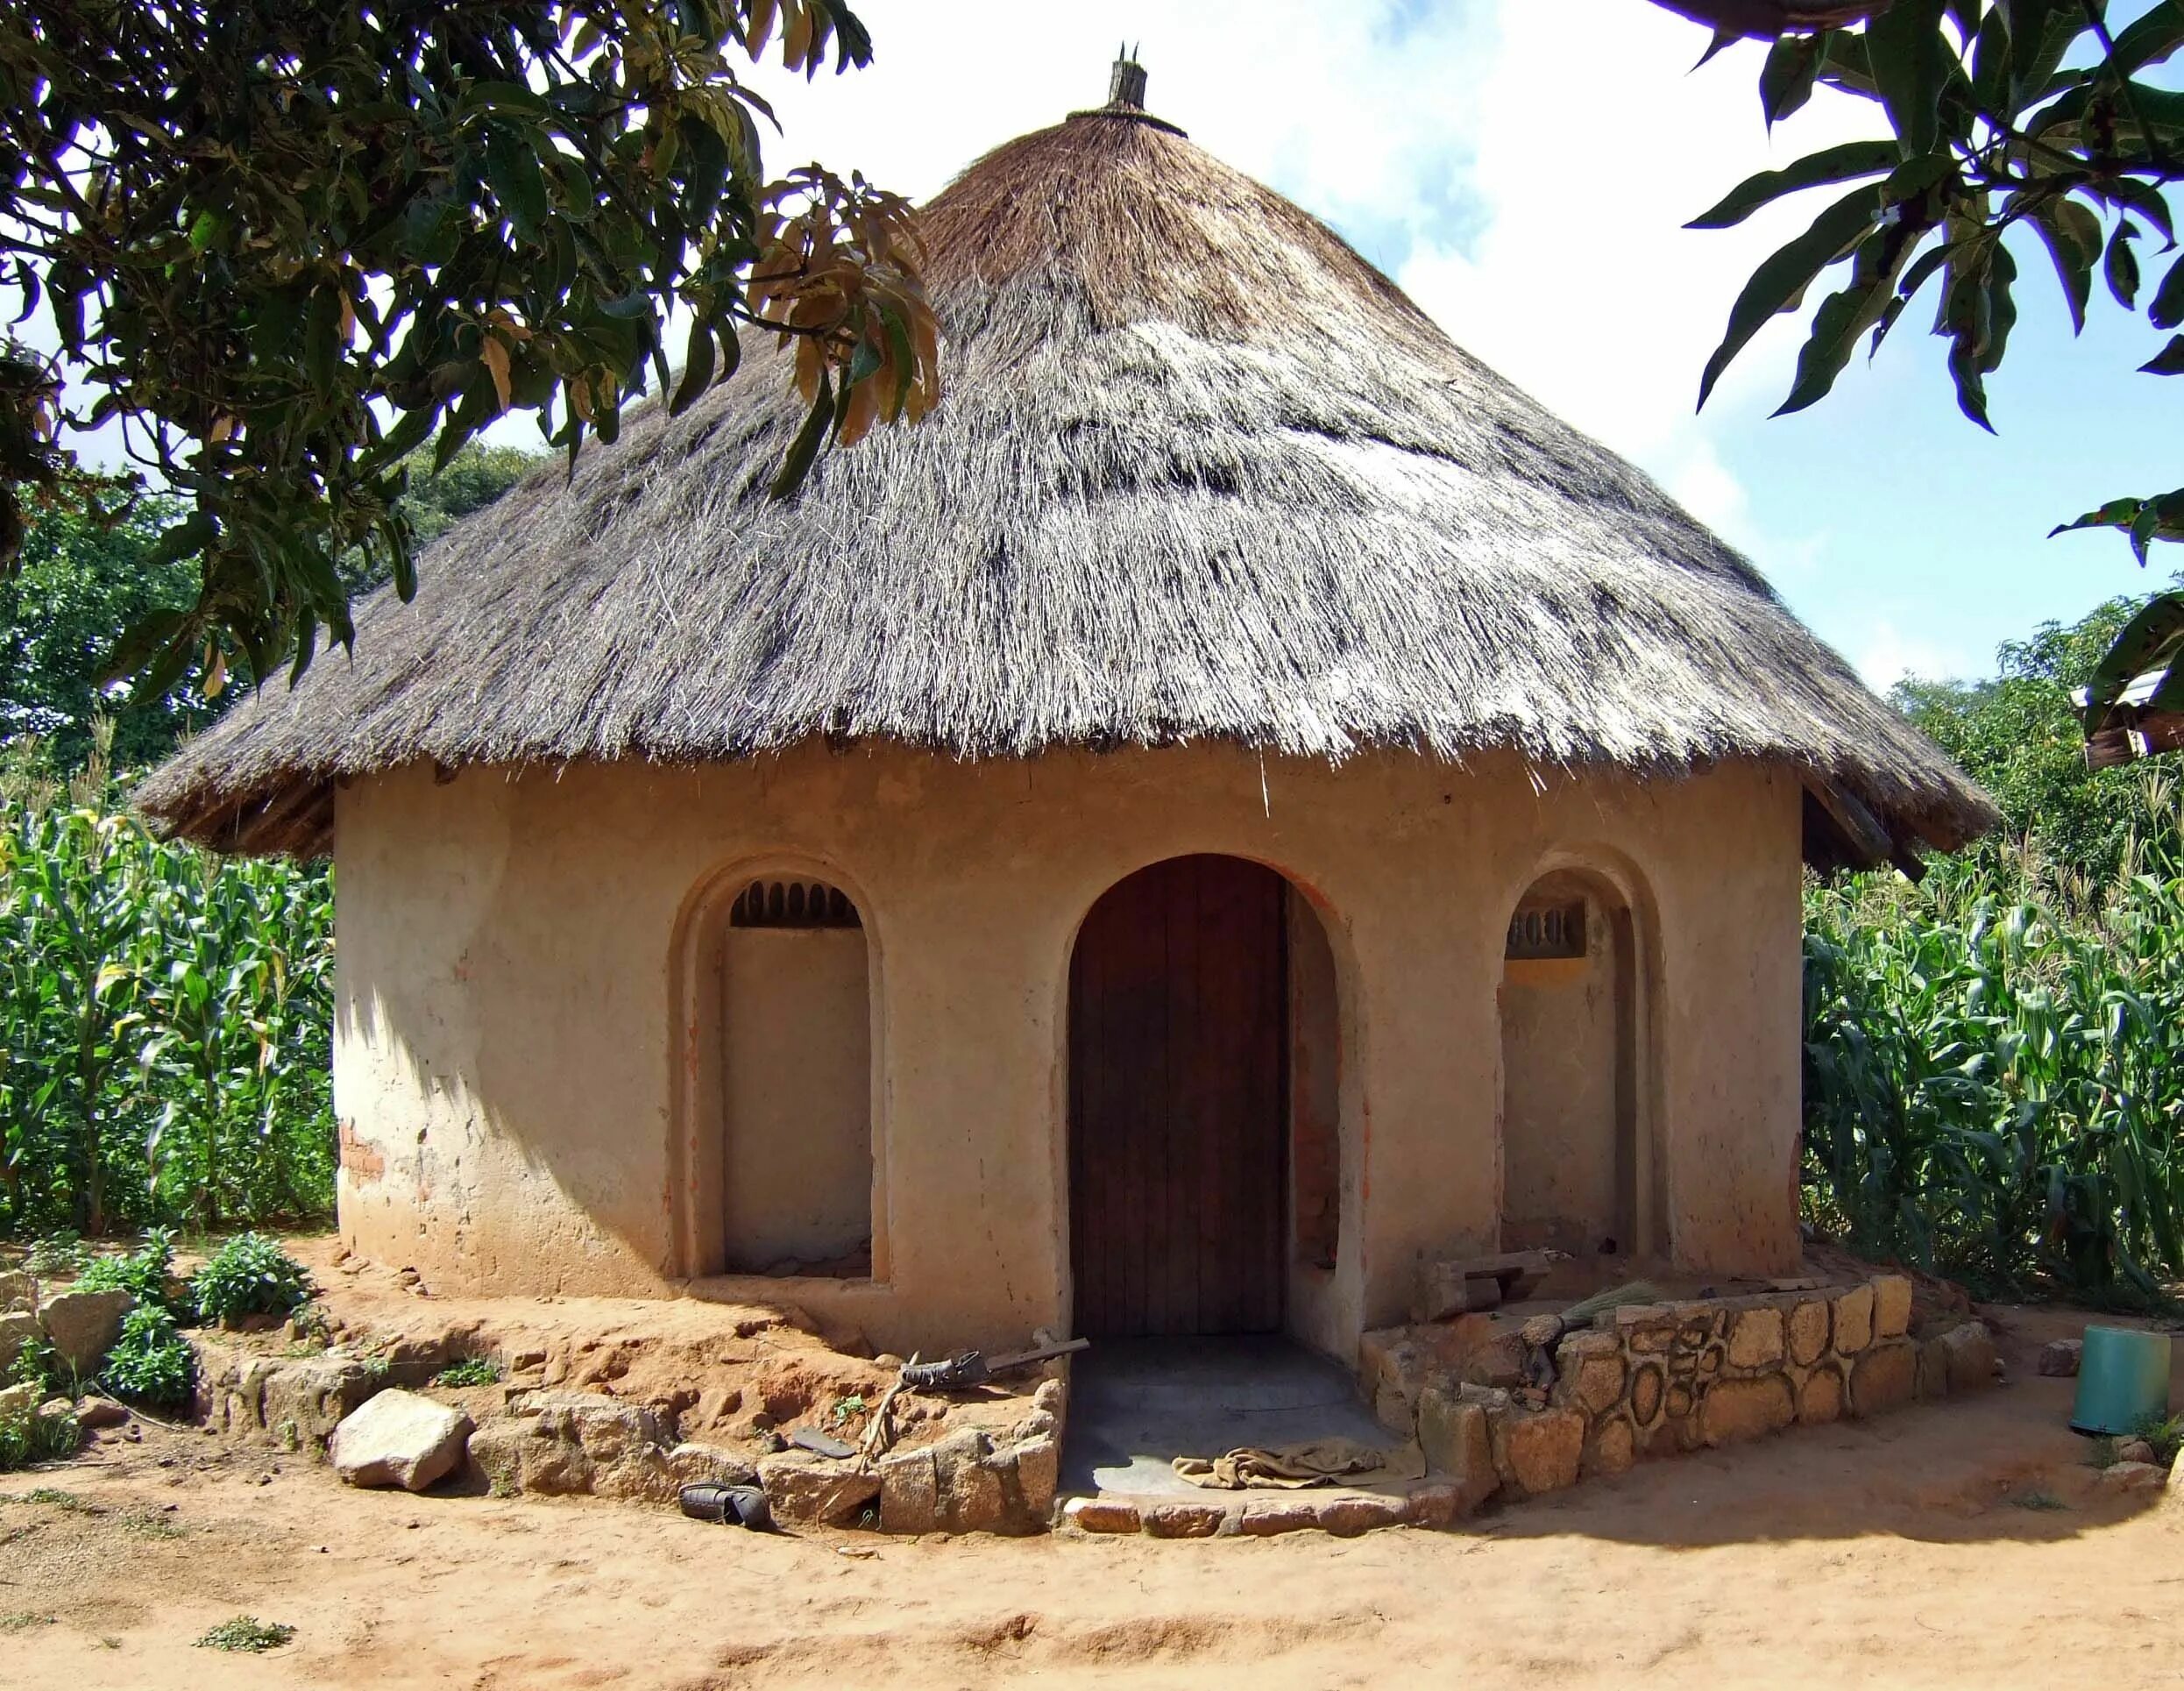 The coastal village cabanas. Дом в Африке. Африканские домики. Африканские дома. Архитектура Африки.